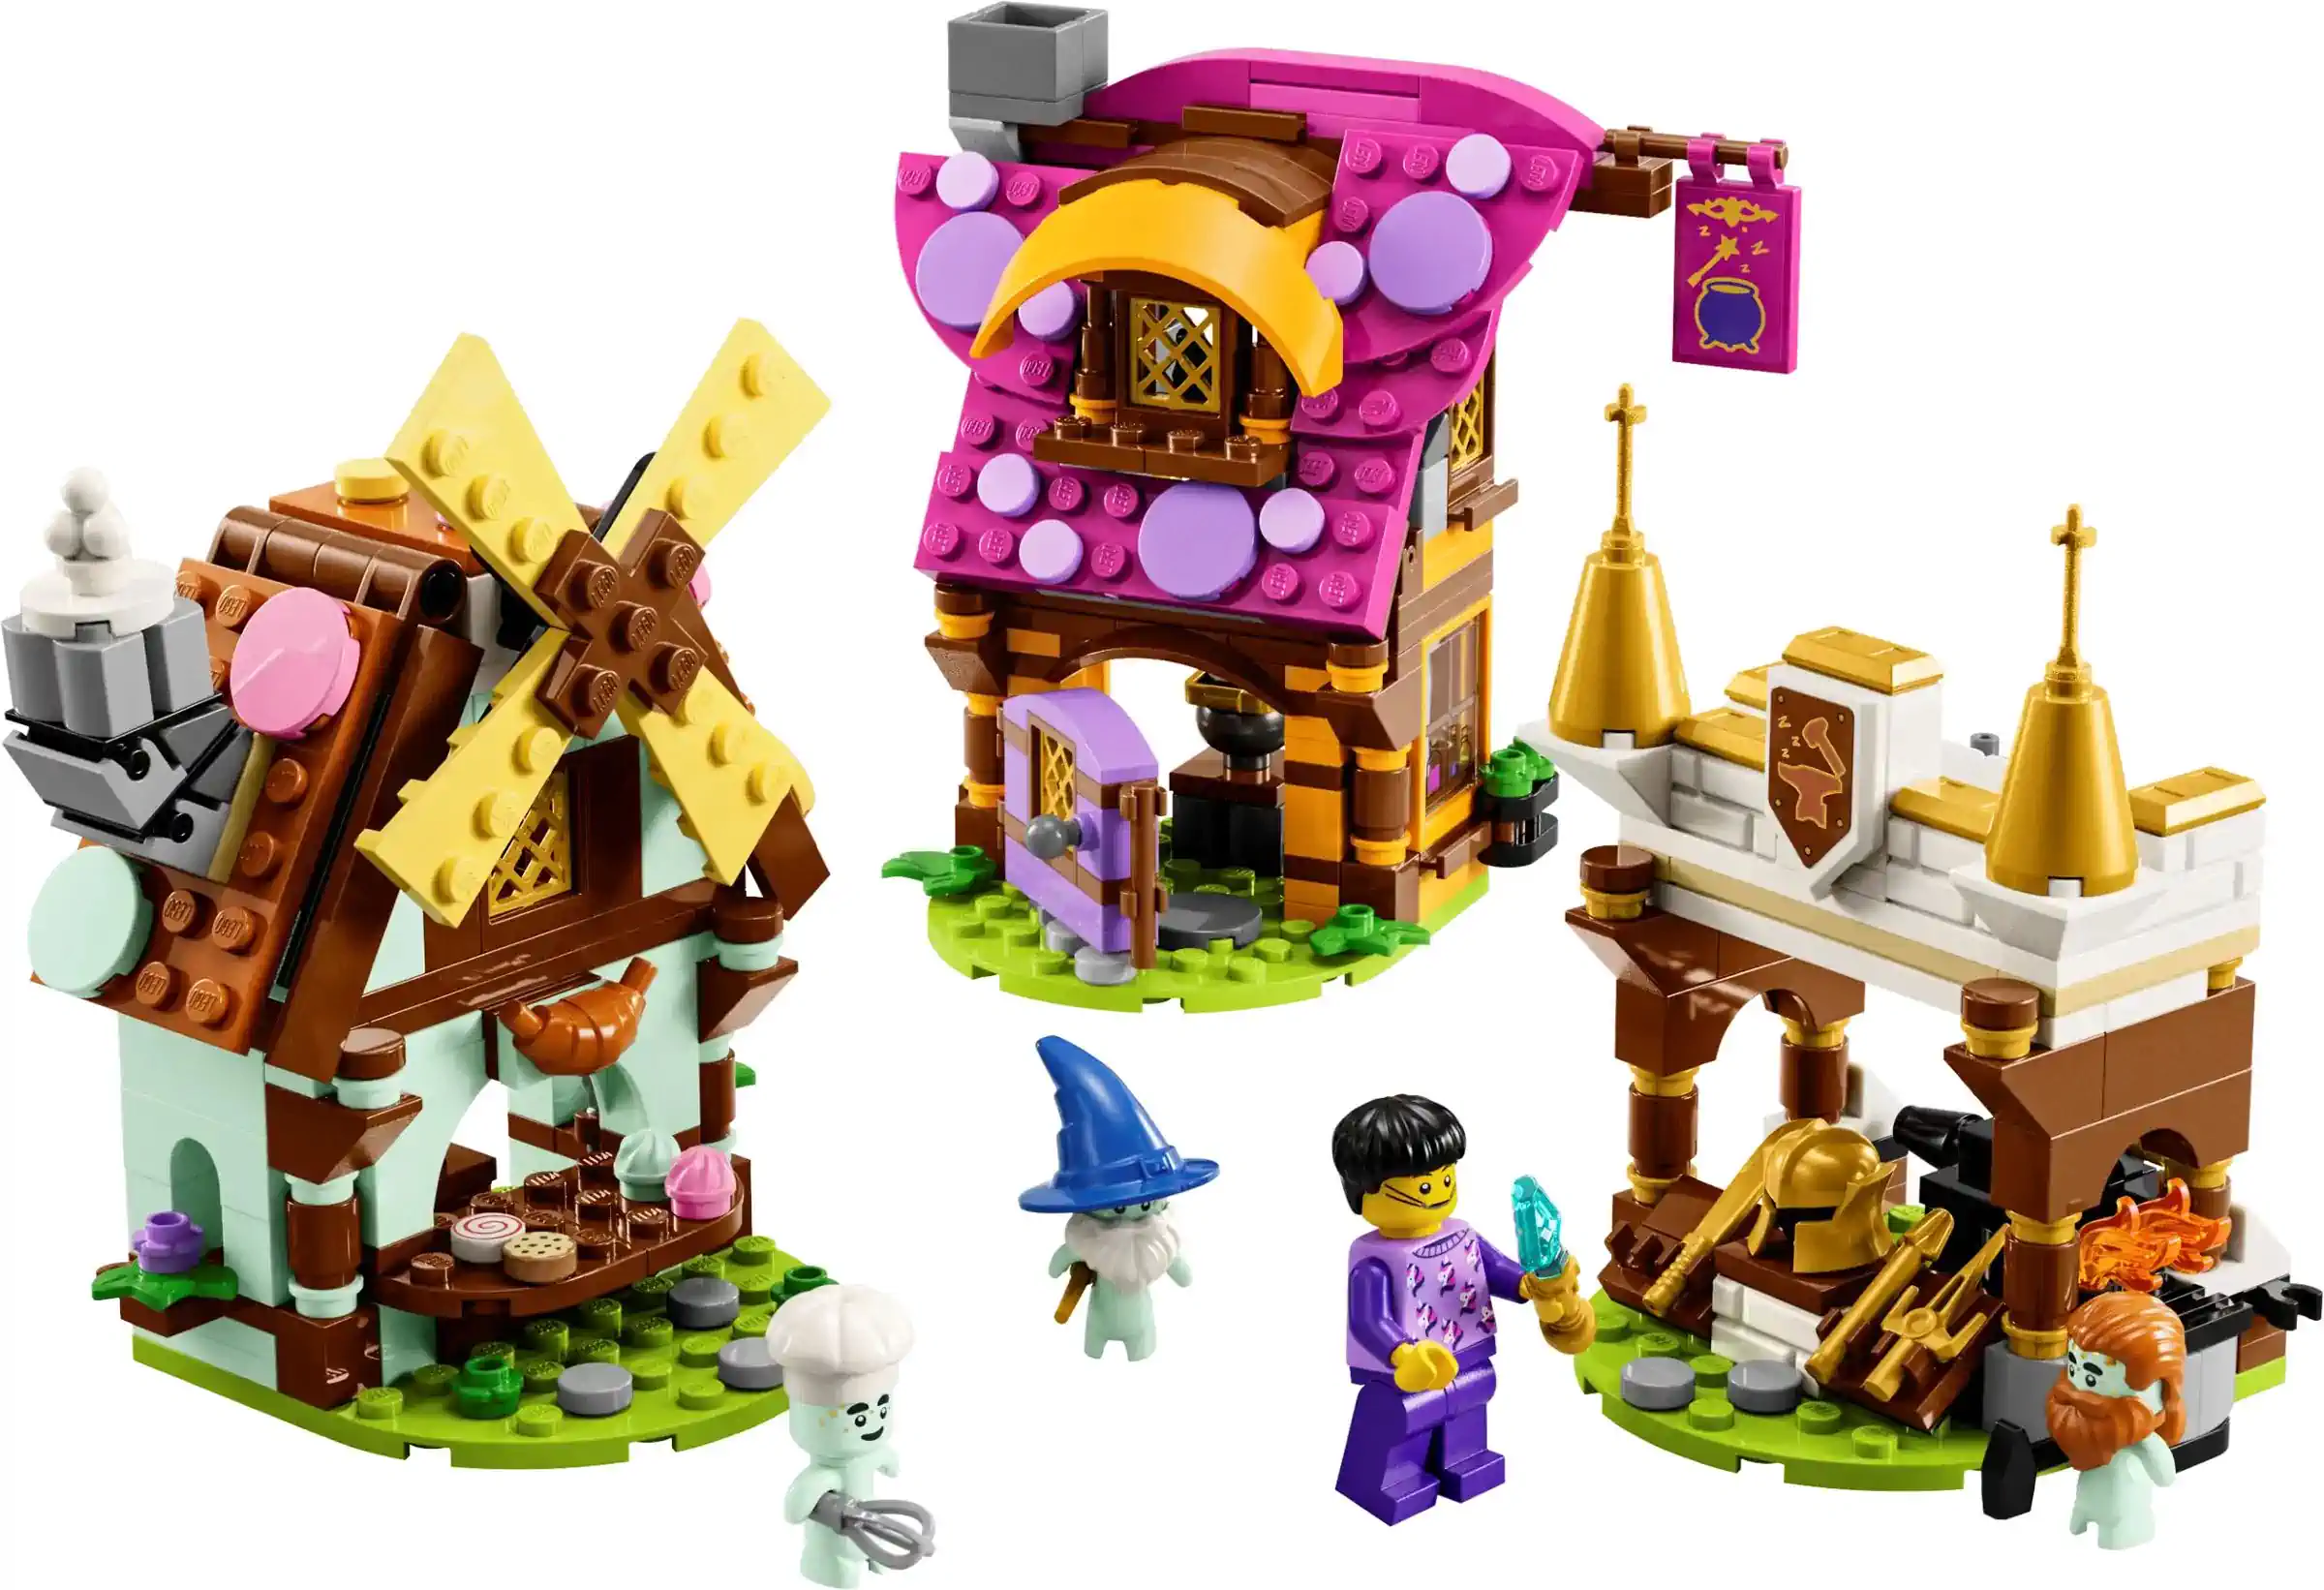 LEGO DREAMZzz Set Traumdorf 40657